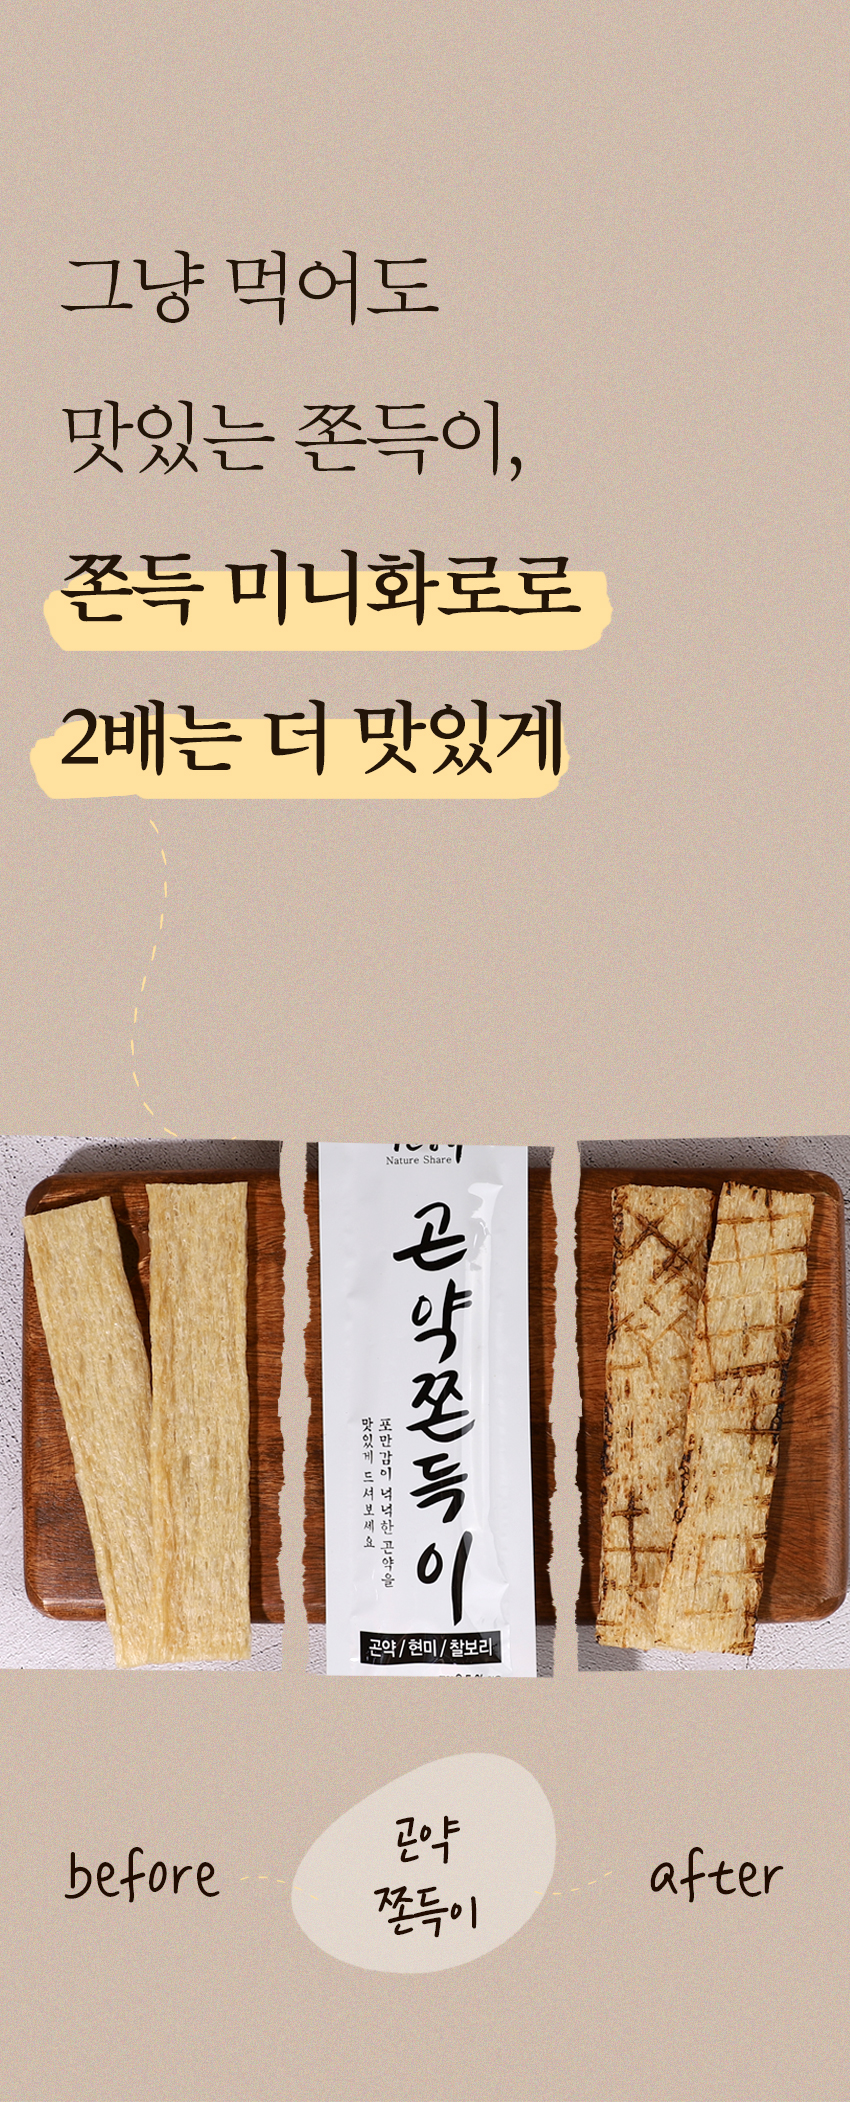 韓國食品-[자연공유] 쫀득미니화로